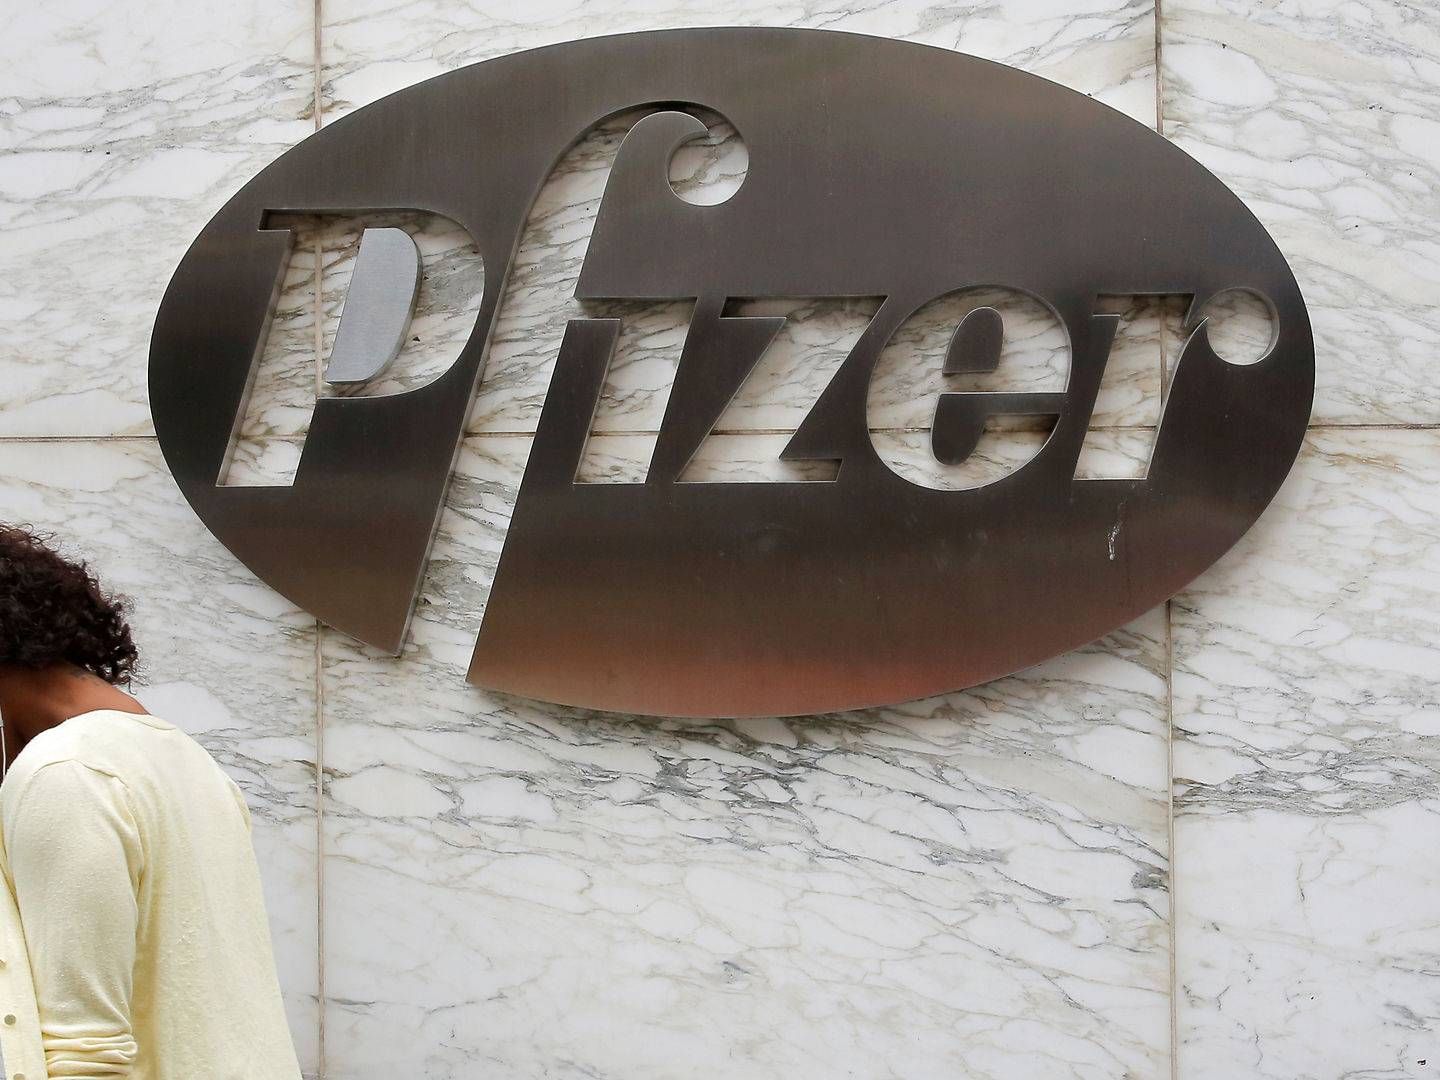 Amerikanske Pfizer skyder yderligere 3,5 mia. kroner i nyt genterapi-center og opretter samtidigt 300 nye stillinger. | Foto: Andrew Kelly/Reuters/Ritzau Scanpix